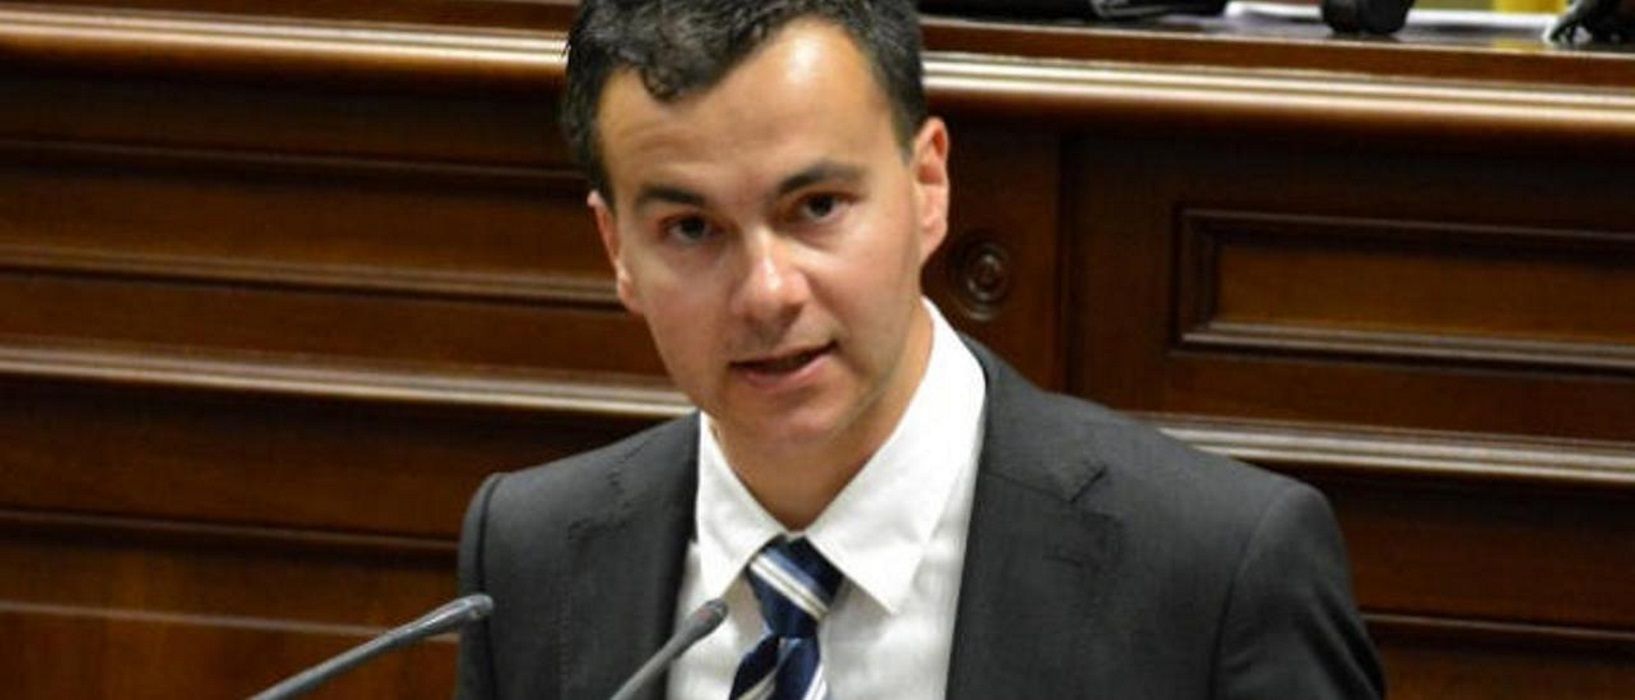 Héctor Gómez, nuevo ministro de Industria, Comercio y Turismo